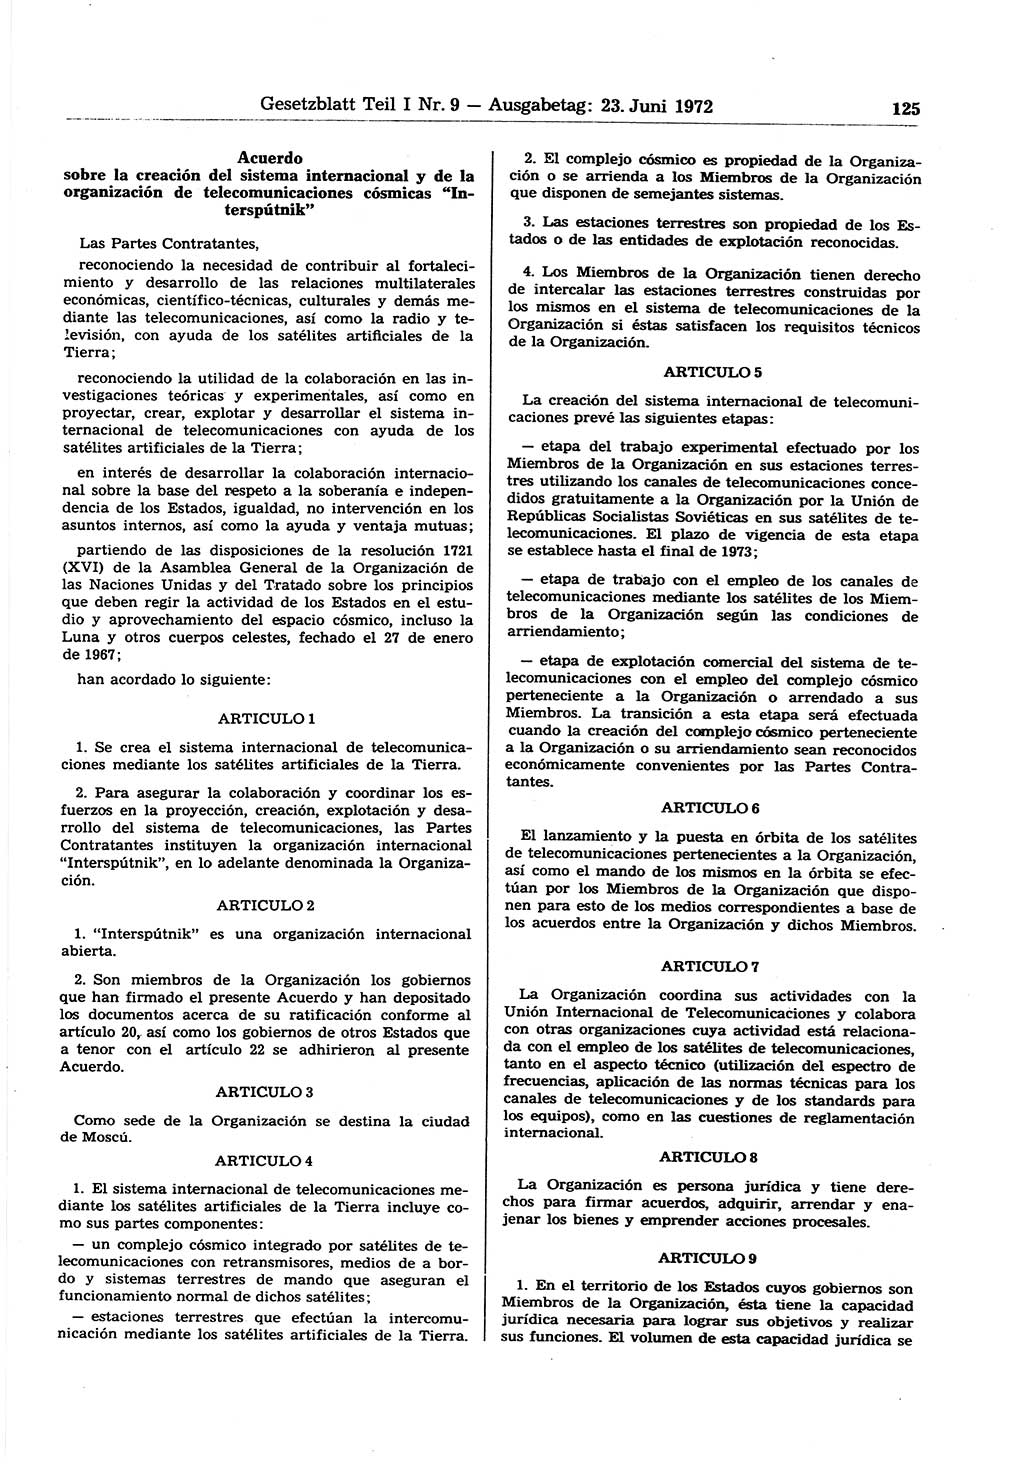 Gesetzblatt (GBl.) der Deutschen Demokratischen Republik (DDR) Teil Ⅰ 1972, Seite 125 (GBl. DDR Ⅰ 1972, S. 125)